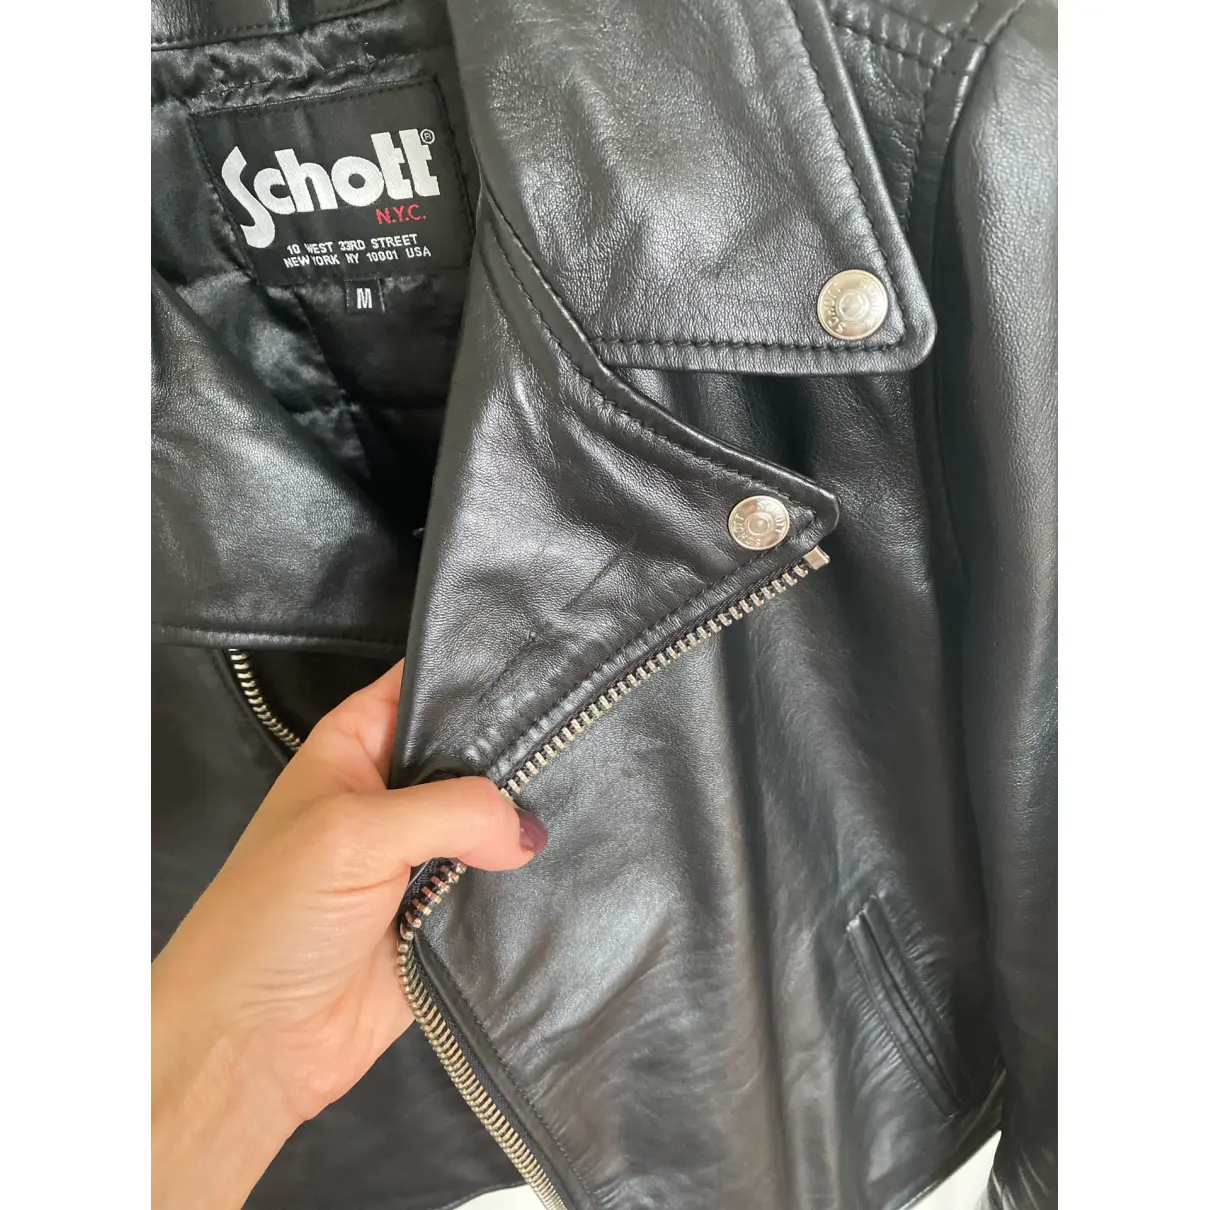 Leather biker jacket Schott